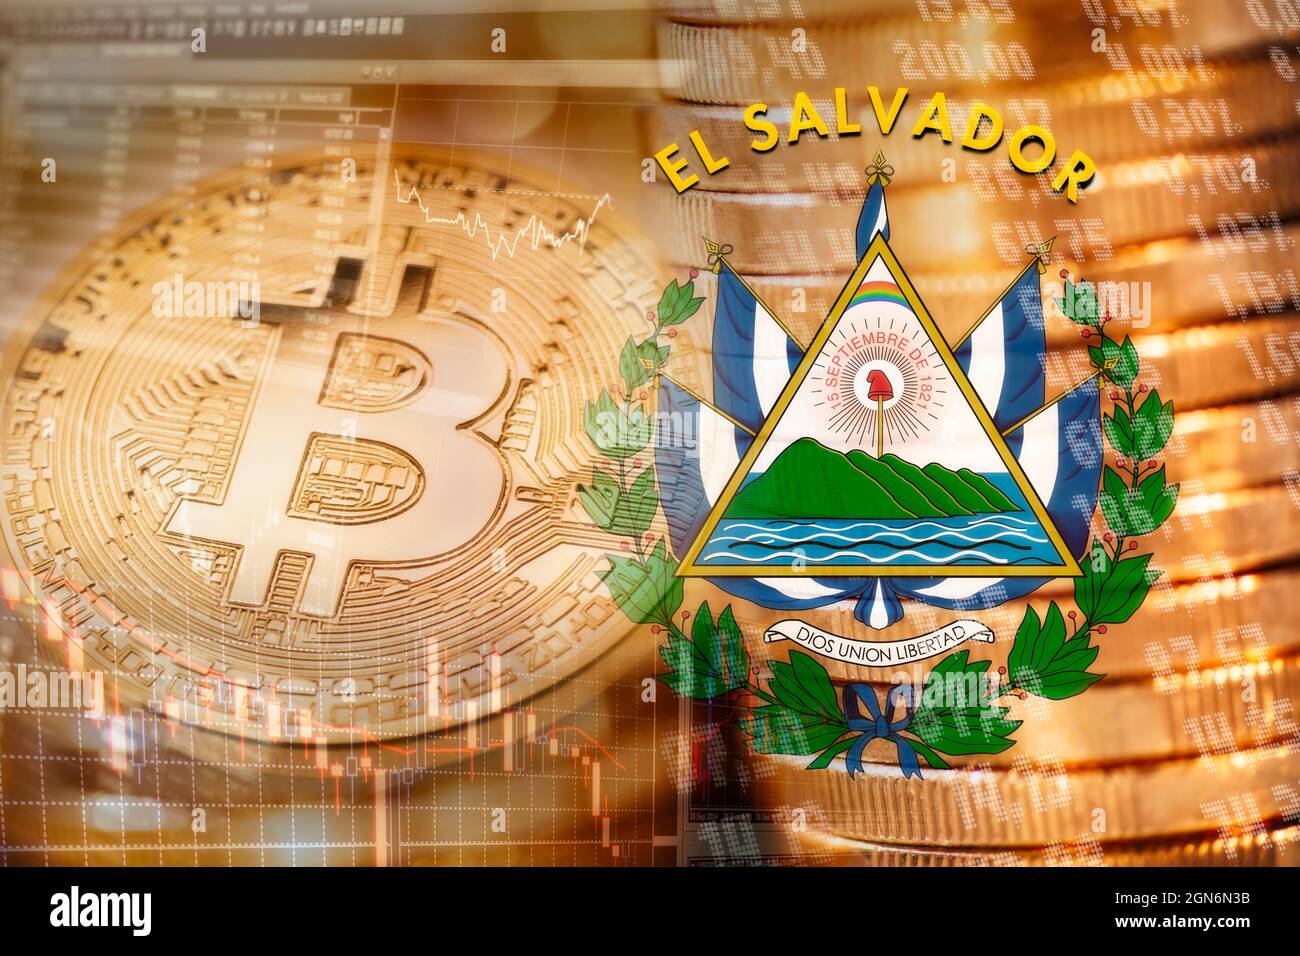 Bitcoin è un mezzo di pagamento ufficiale in El Salvador Foto Stock